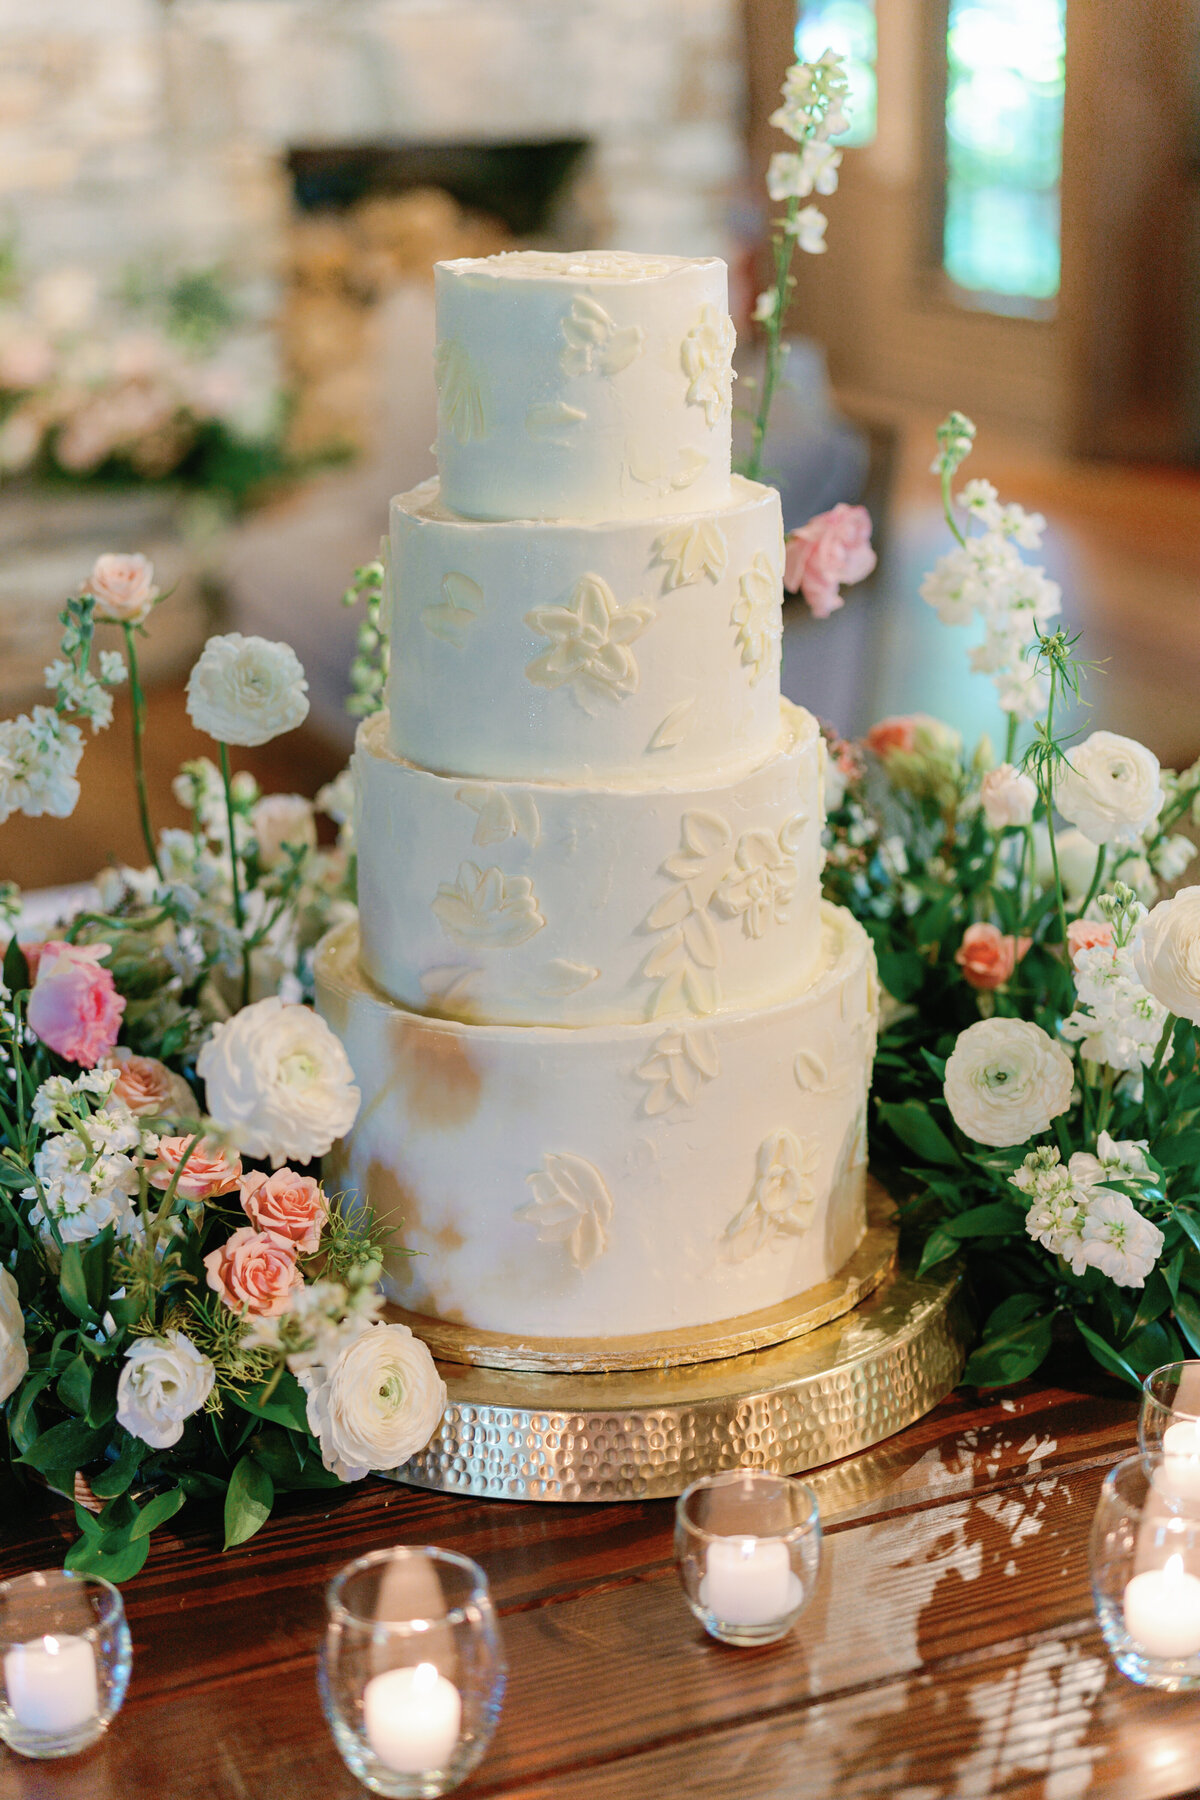 cake_details_old_edwards_farm_highlands_NC_wedding_kailee_dimeglio_photography-768